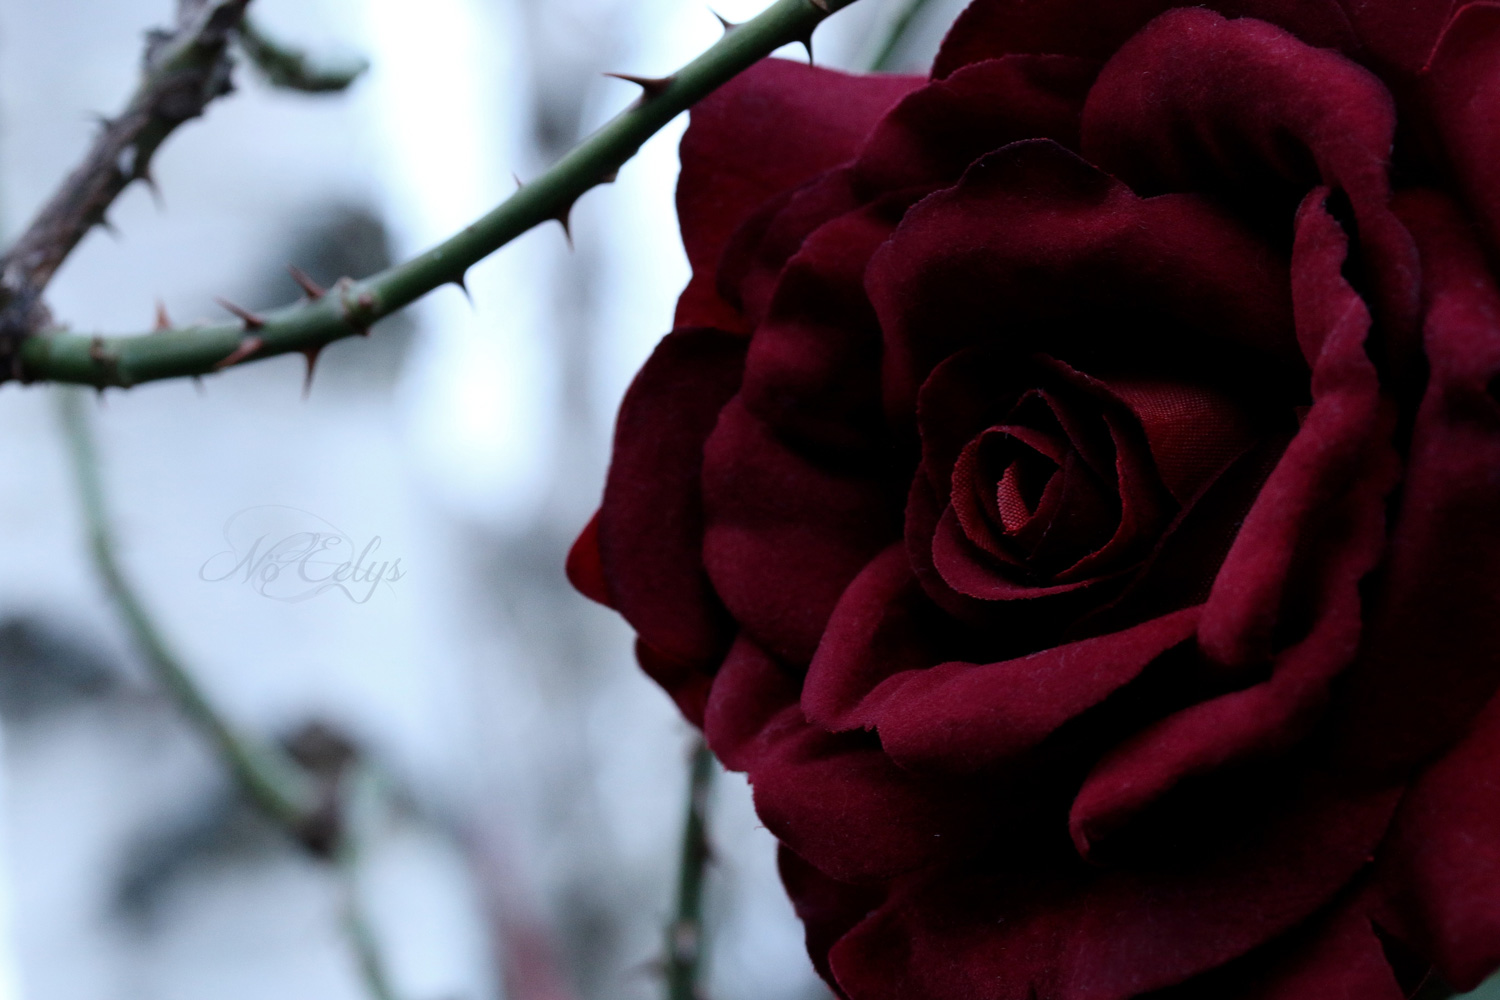 Rose rouge avec épines, Nö Eelys Photo, photographe alternative gothique romantique en région parisienne